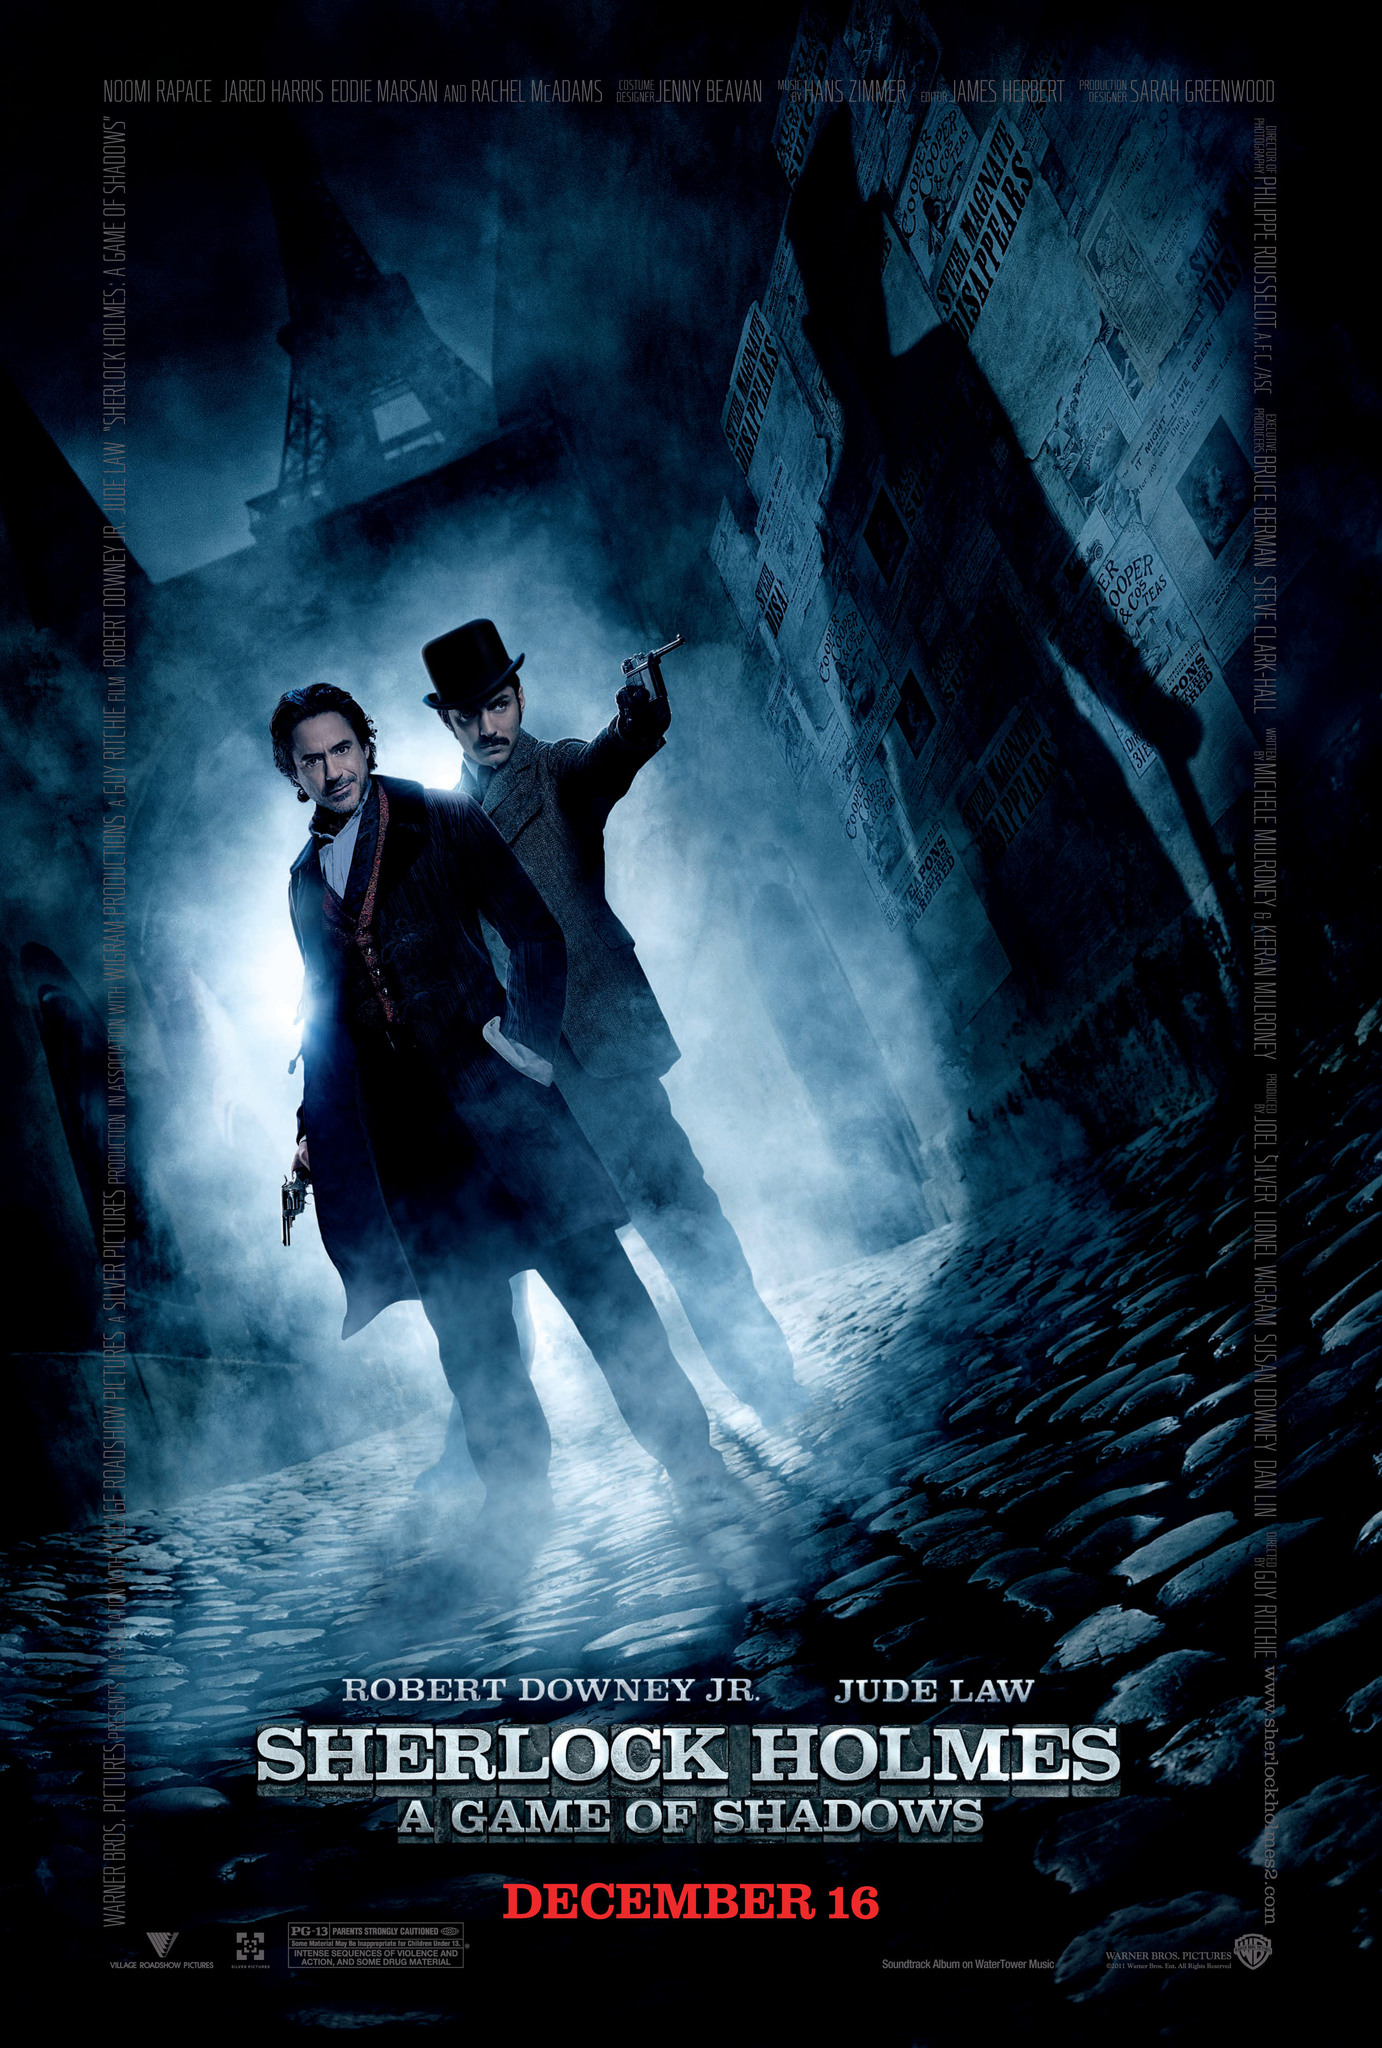 Download Sherlock Holmes 2 English Subtitles Srt File